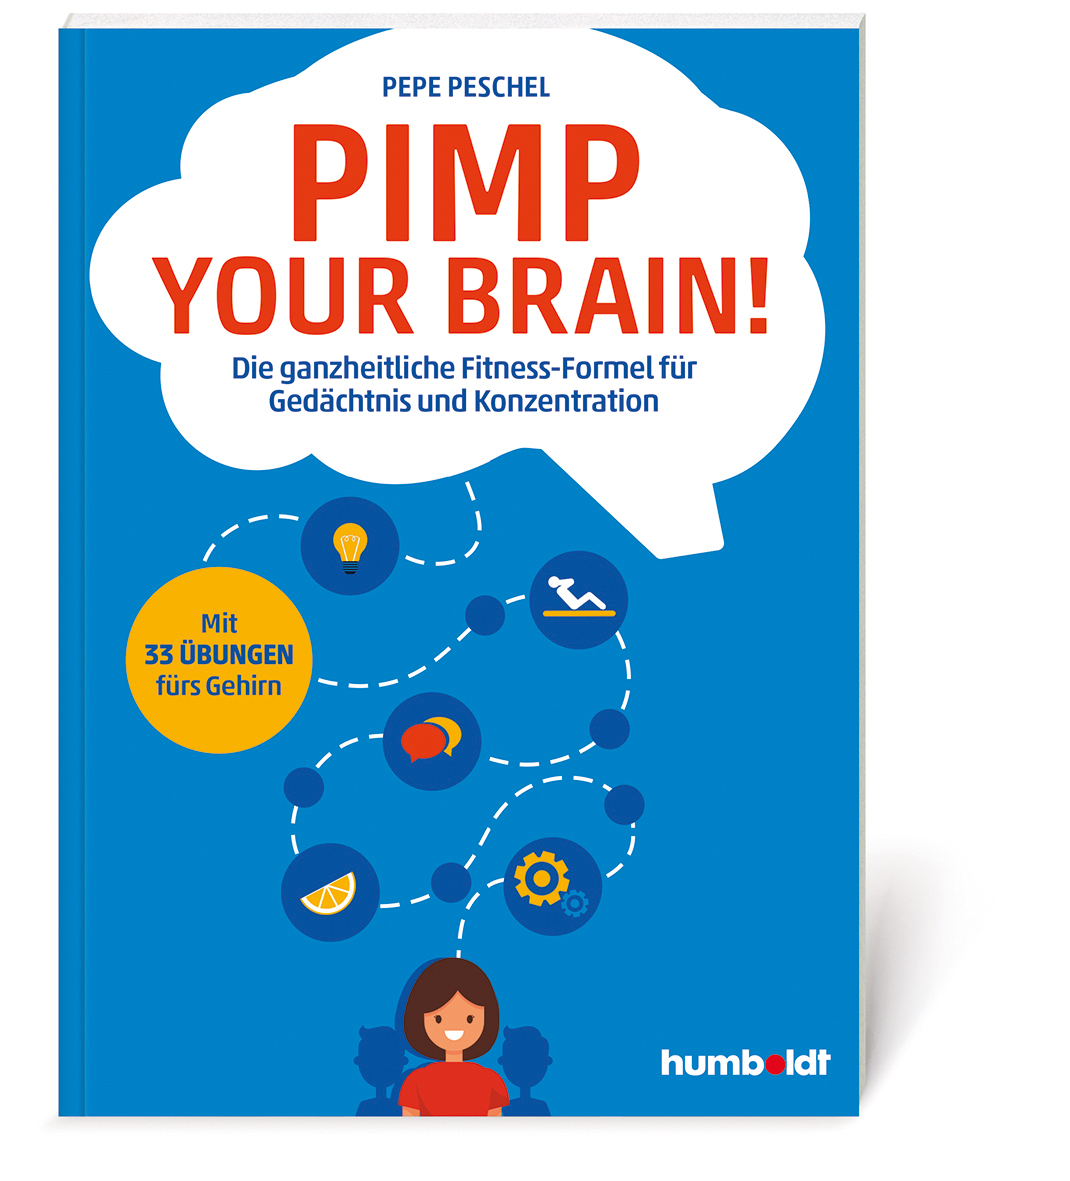 Pimp your Brain! Die ganzheitliche Fitness-Formel für Gedächtnis und Konzentration. Mit 33 Übungen fürs Gehirn